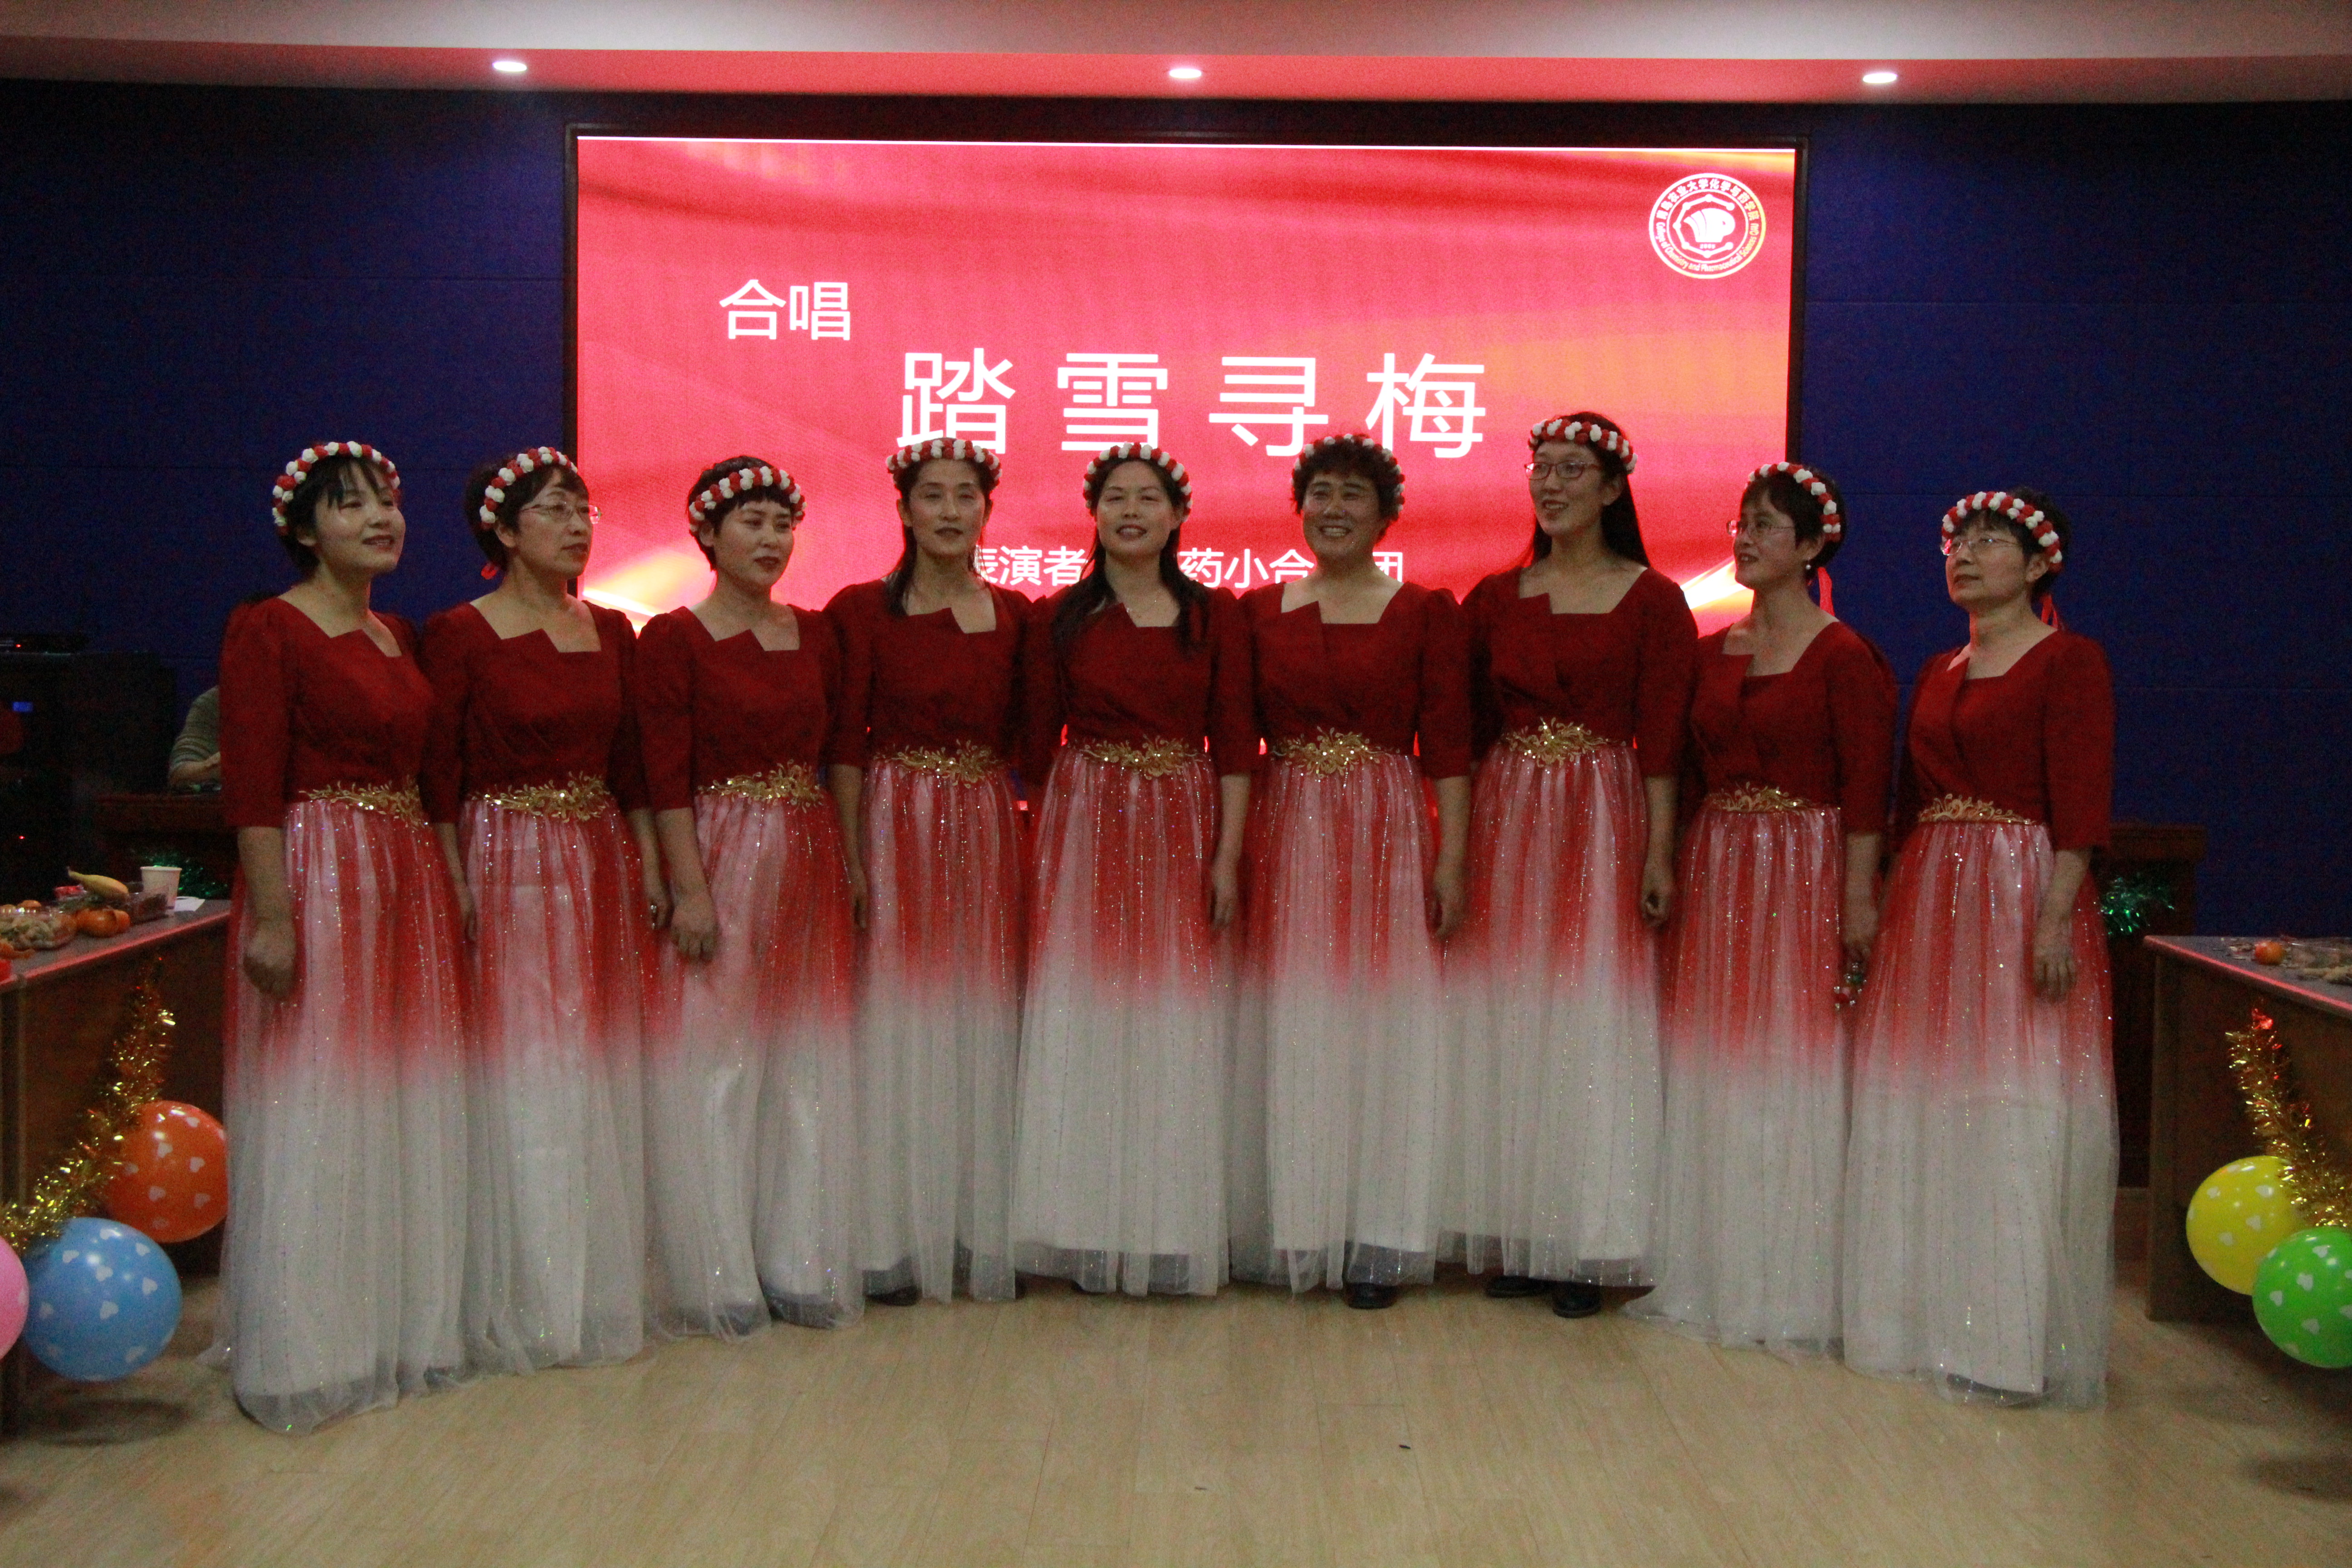 北航幼儿园被评为“北京市早期教育示范基地”